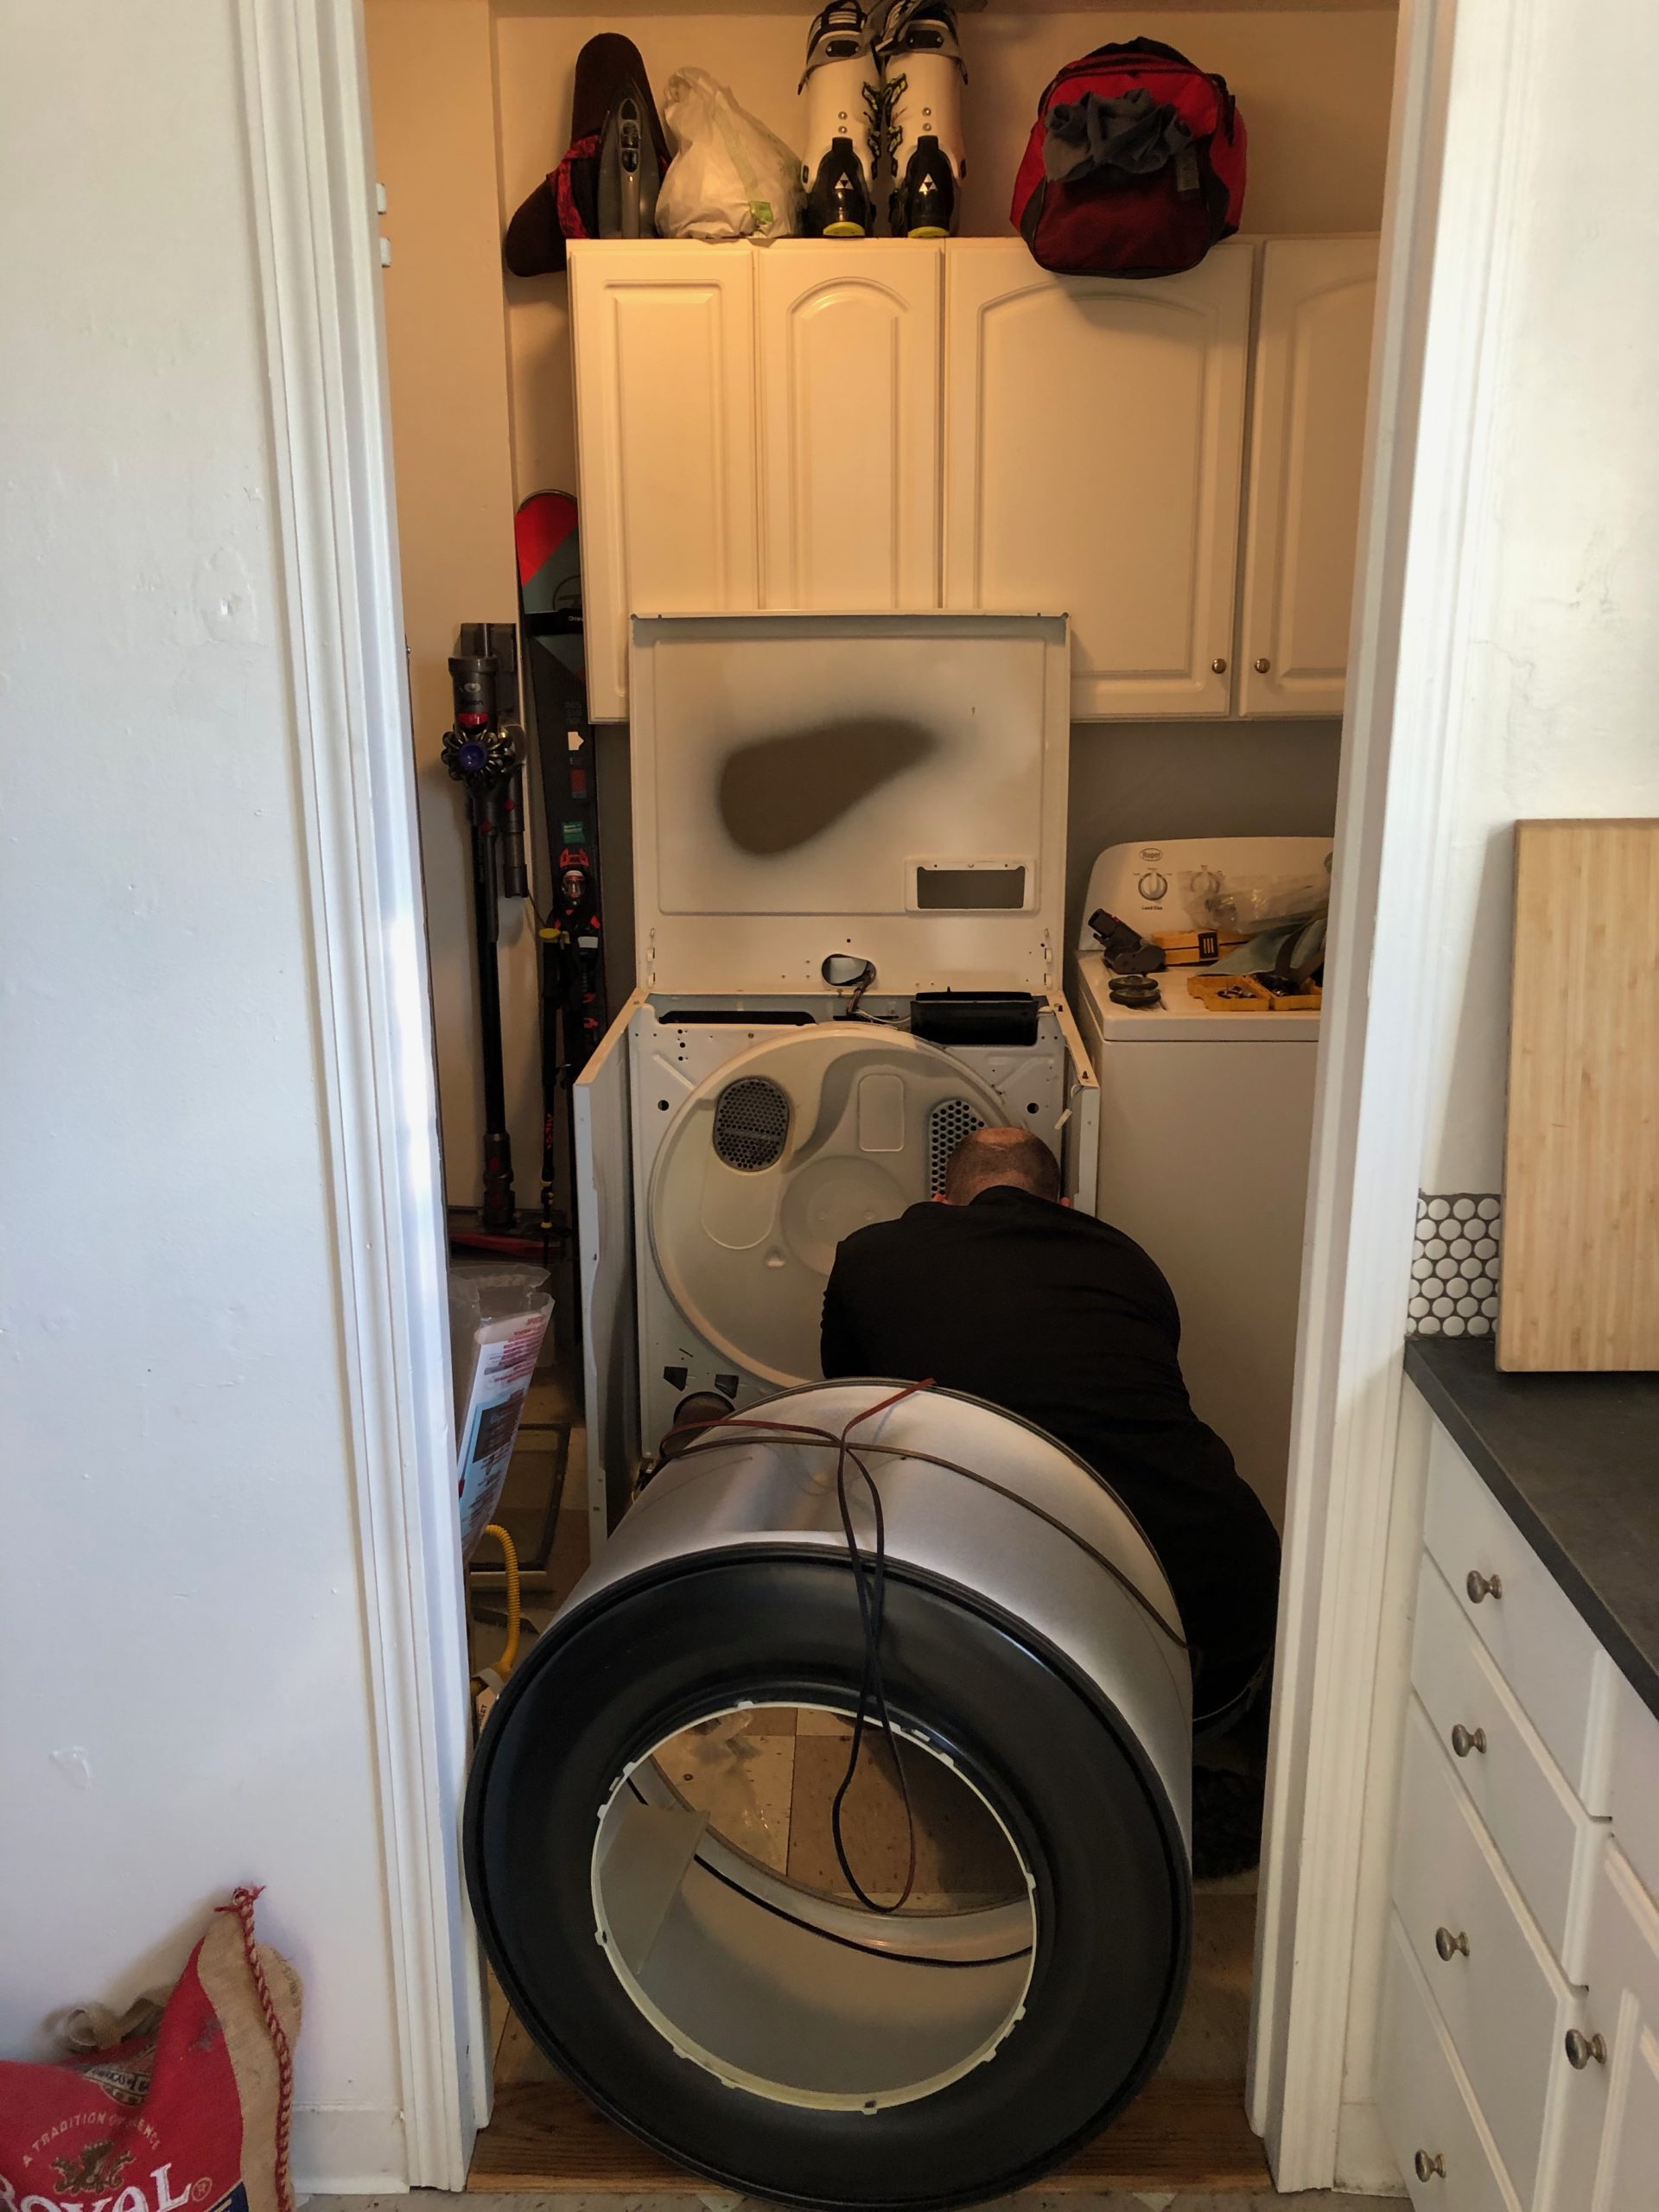 A technician repairing a dryer